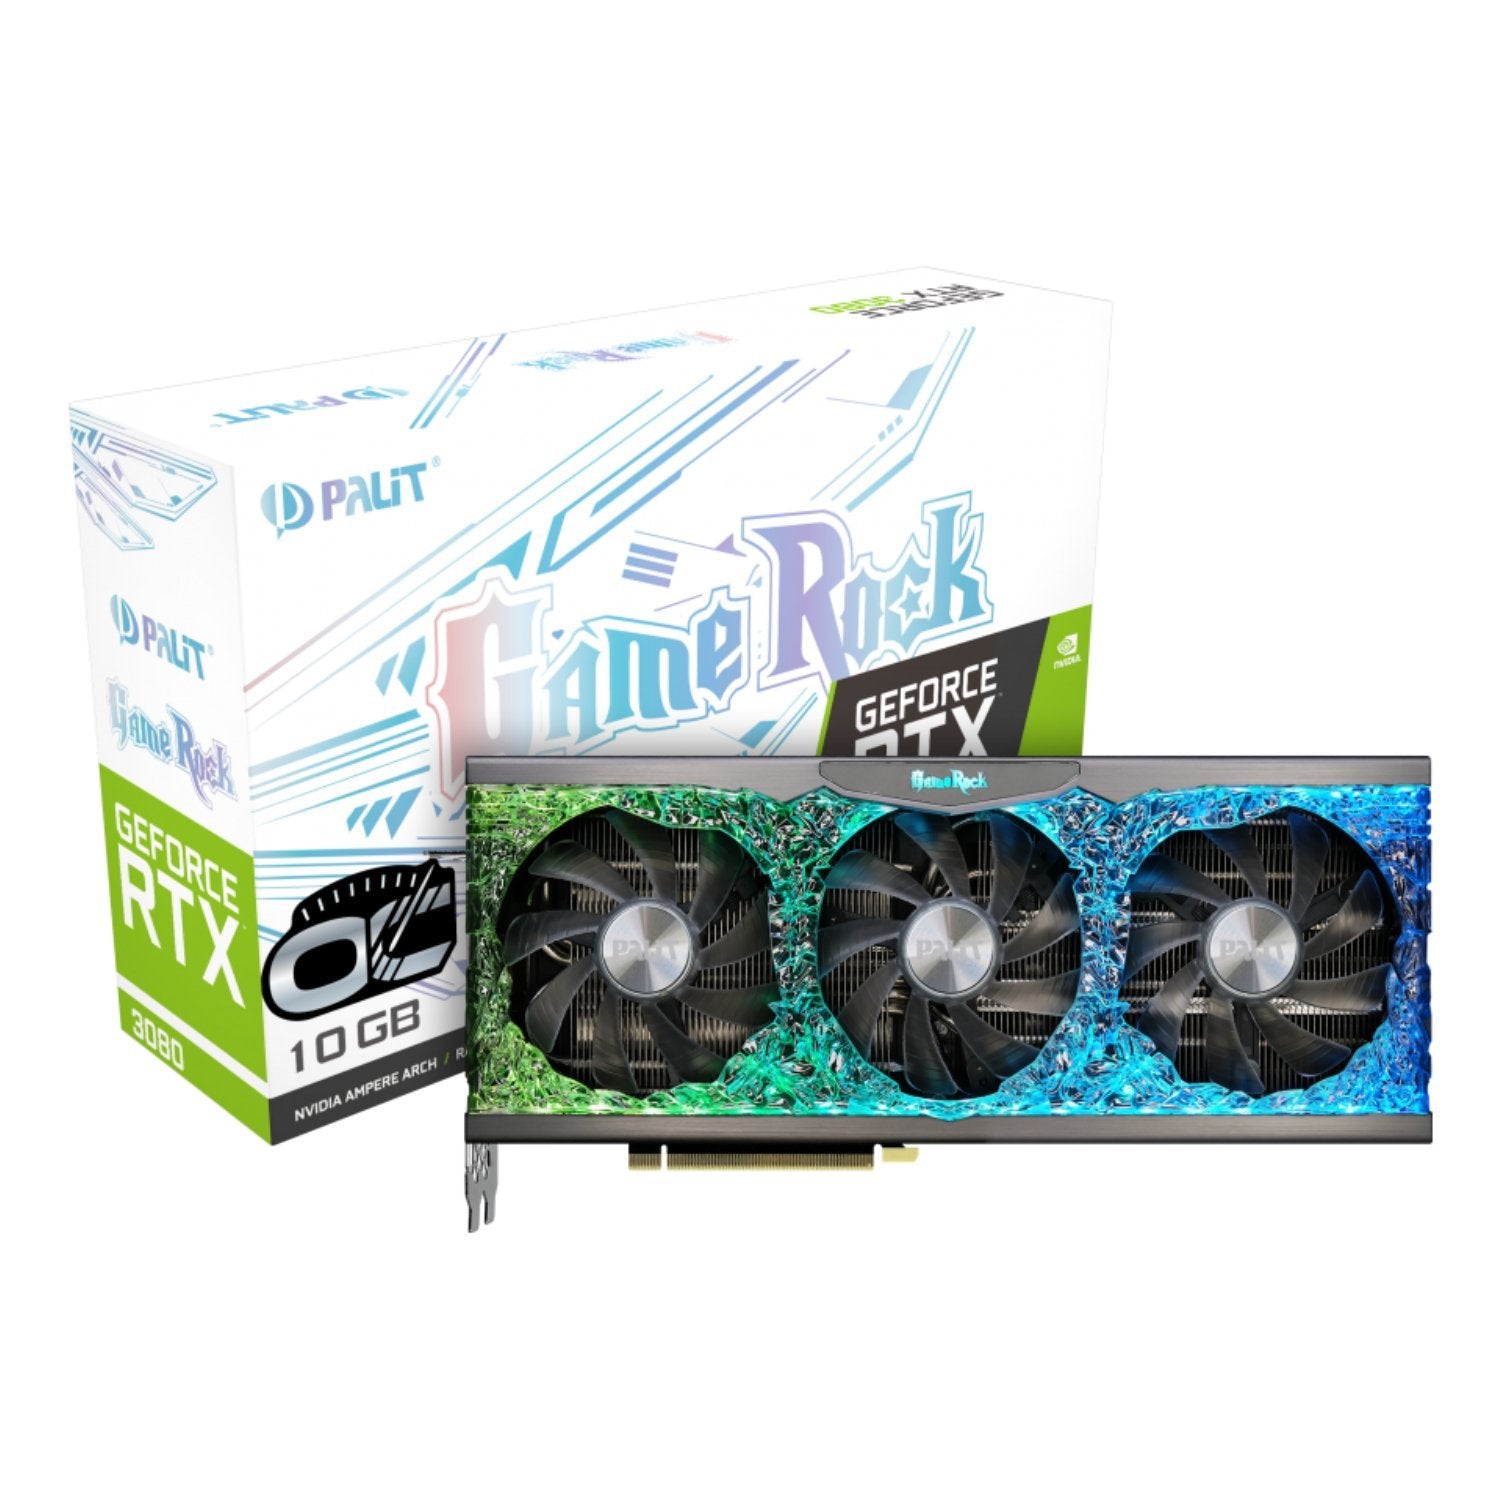 Palit GeForce RTX 3080 GameRock OC LHR 10GB GDDR6X - Store 974 | ستور ٩٧٤